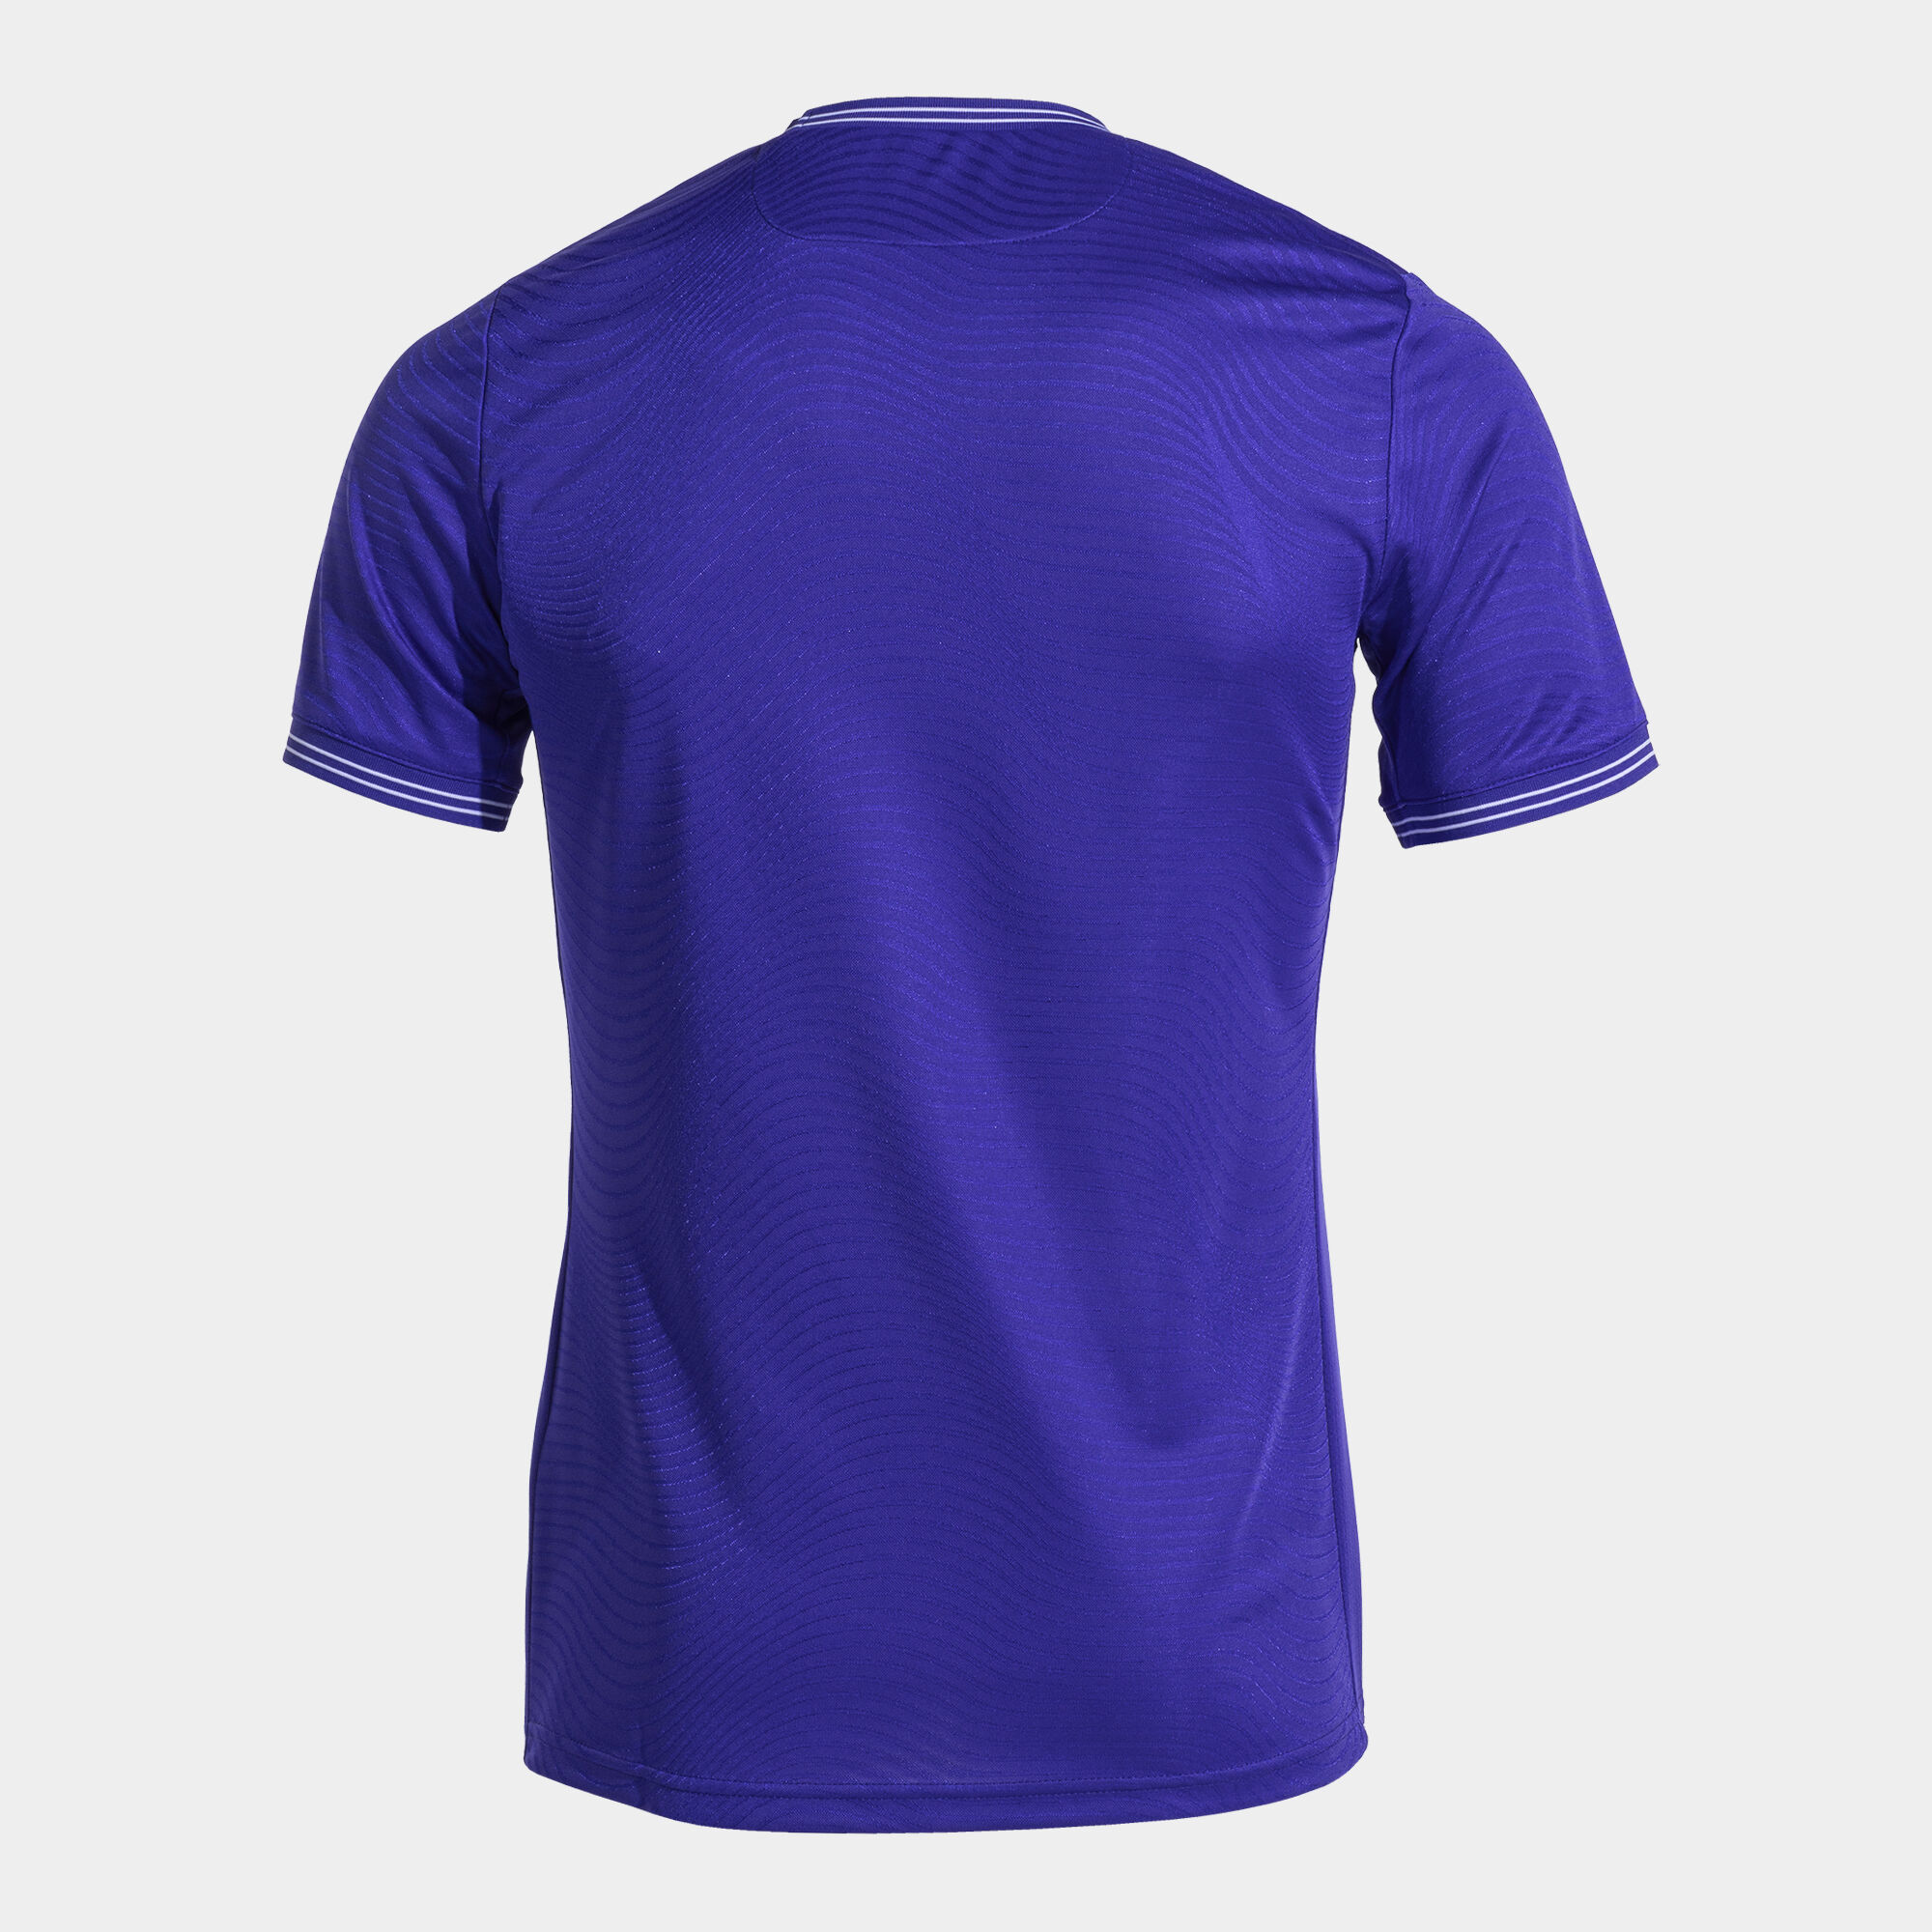 Camiseta manga corta hombre Toletum V violeta